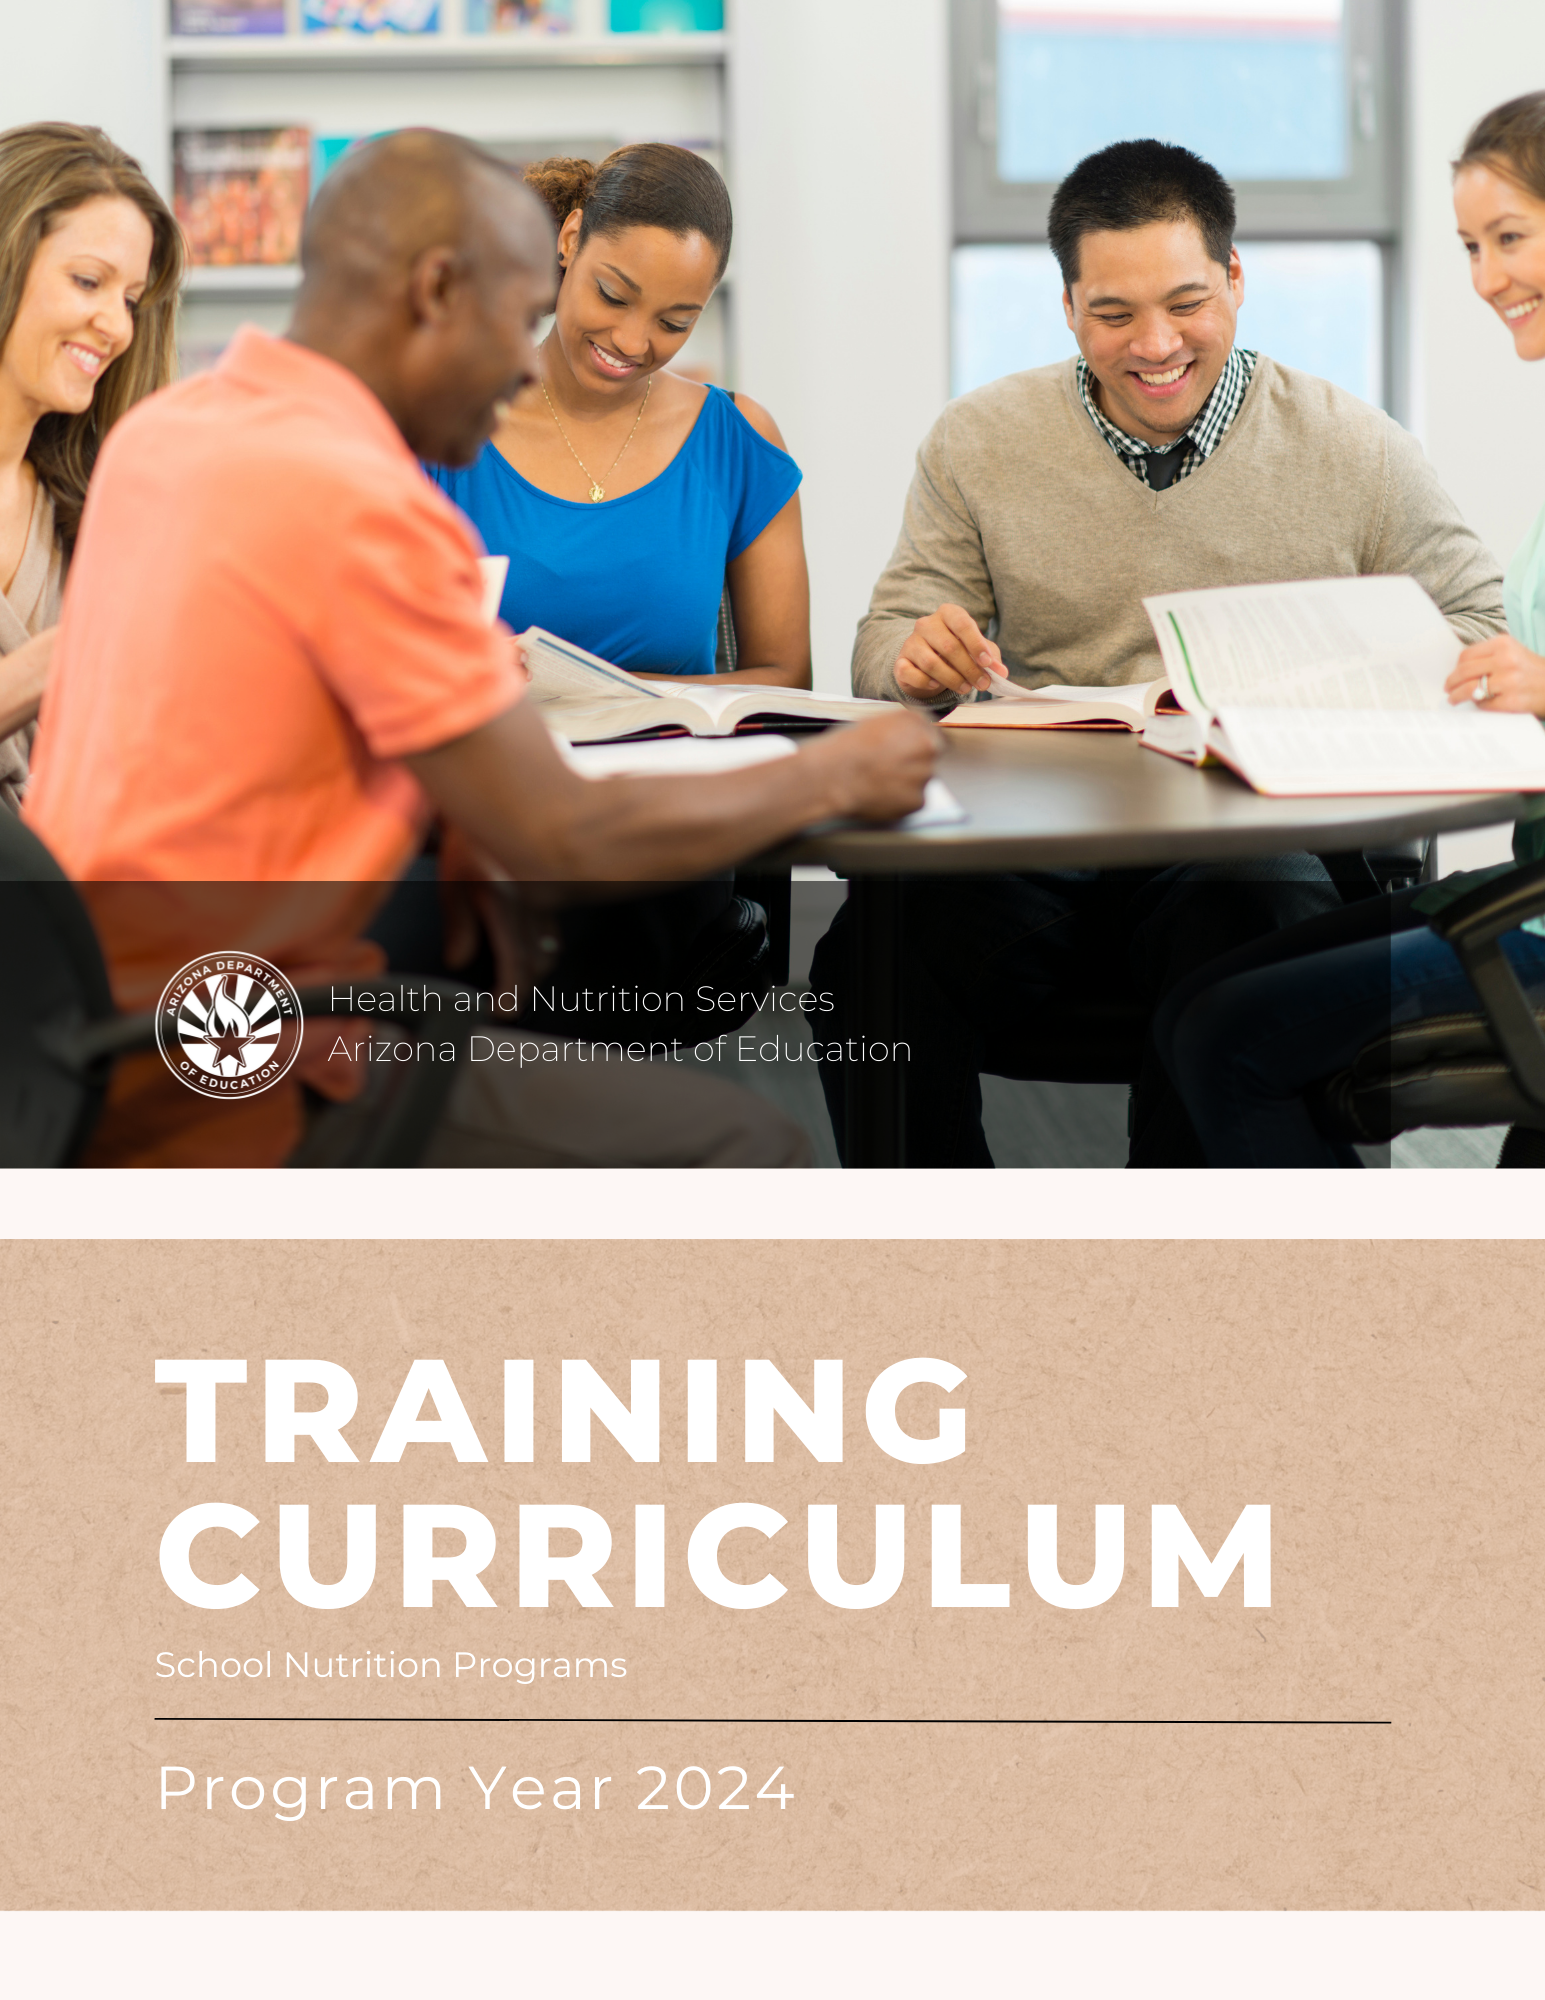 Training Curriculum Image